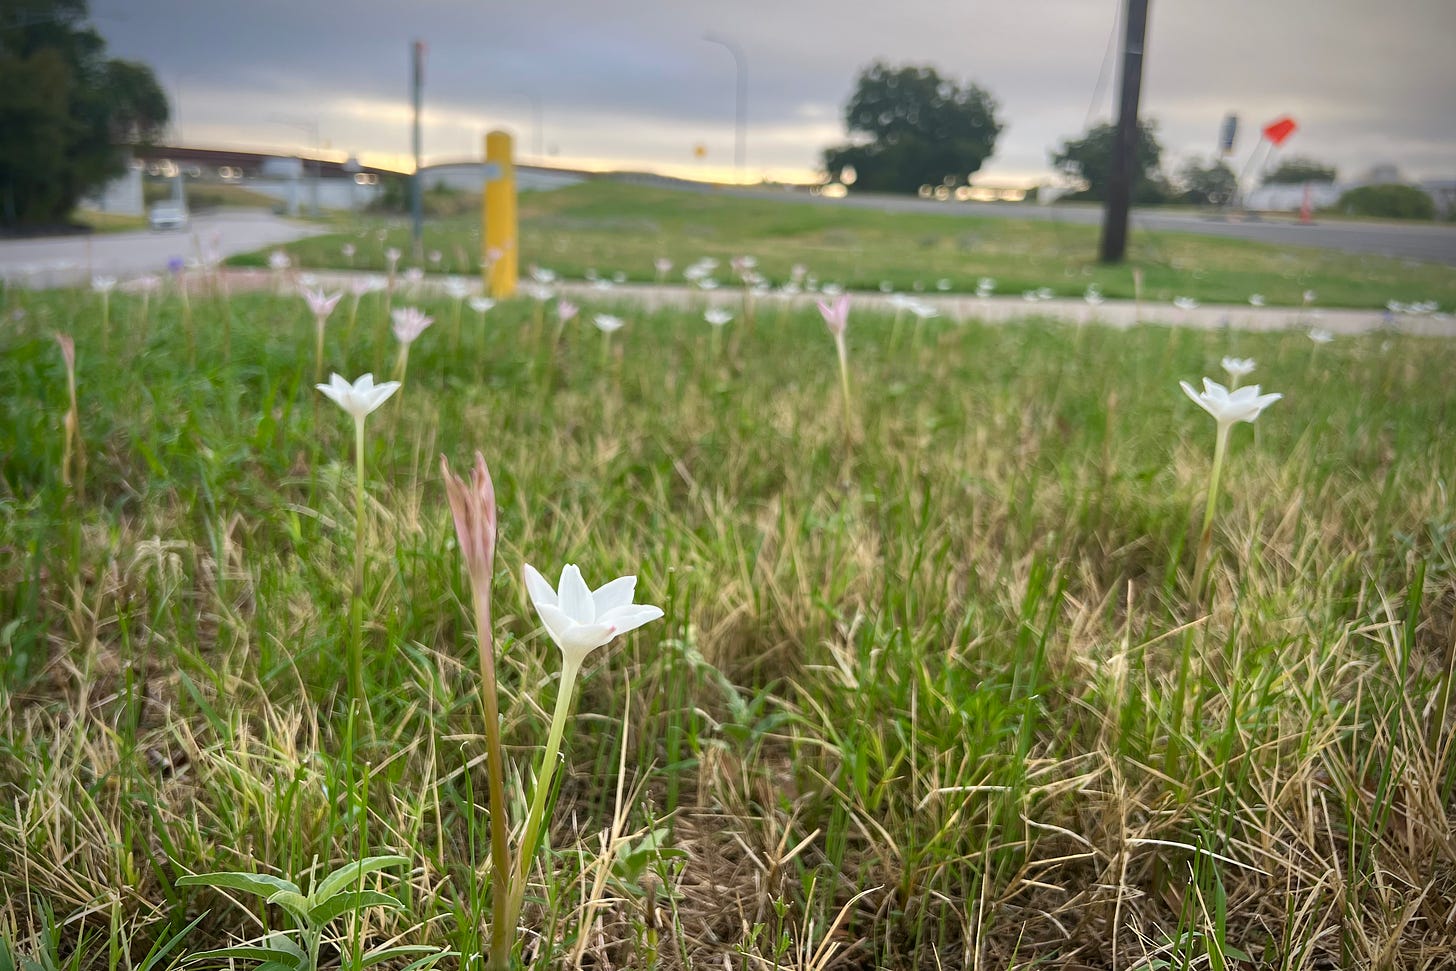 Rain lilies in bloom on a traffic median